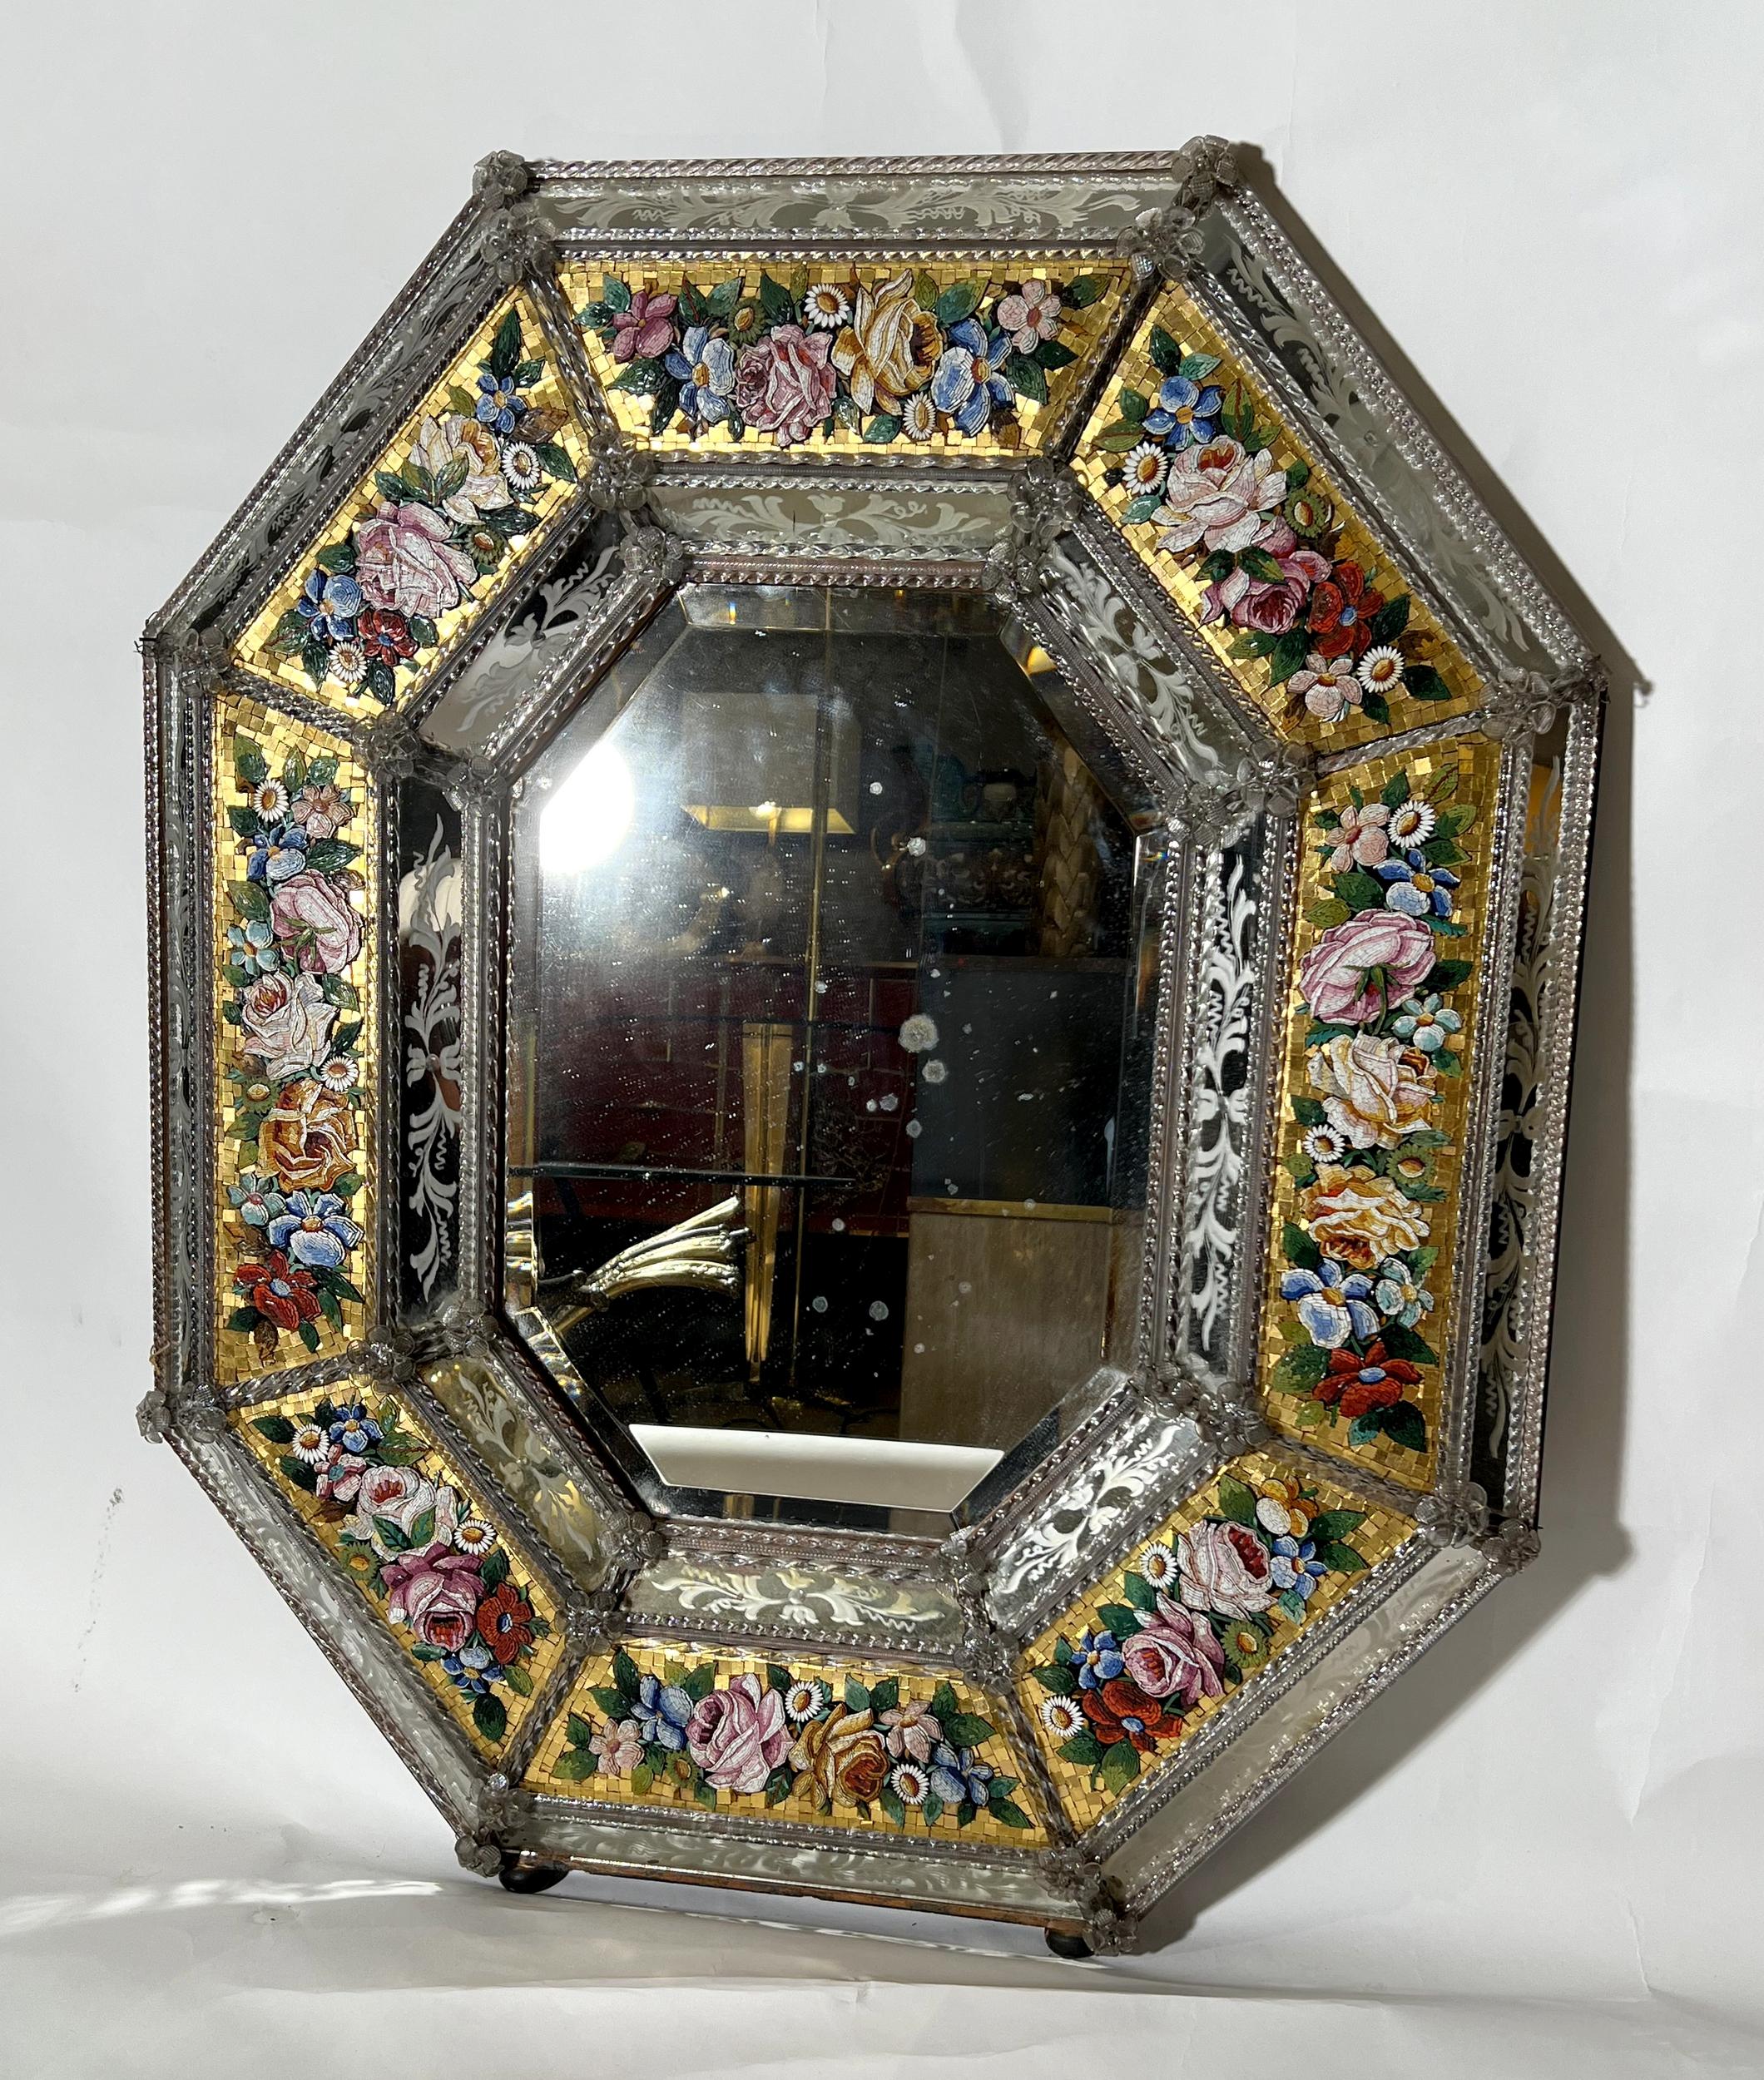 Rare miroir vénitien octogonal en verre gravé et micro-mosaïque, Exposition Universelle de 1867, Venise, Italie, vers 1865. Décor de cartouches en micro-mosaïque représentant des fleurs, des roses paille et des feuillages en léger relief sur fond de